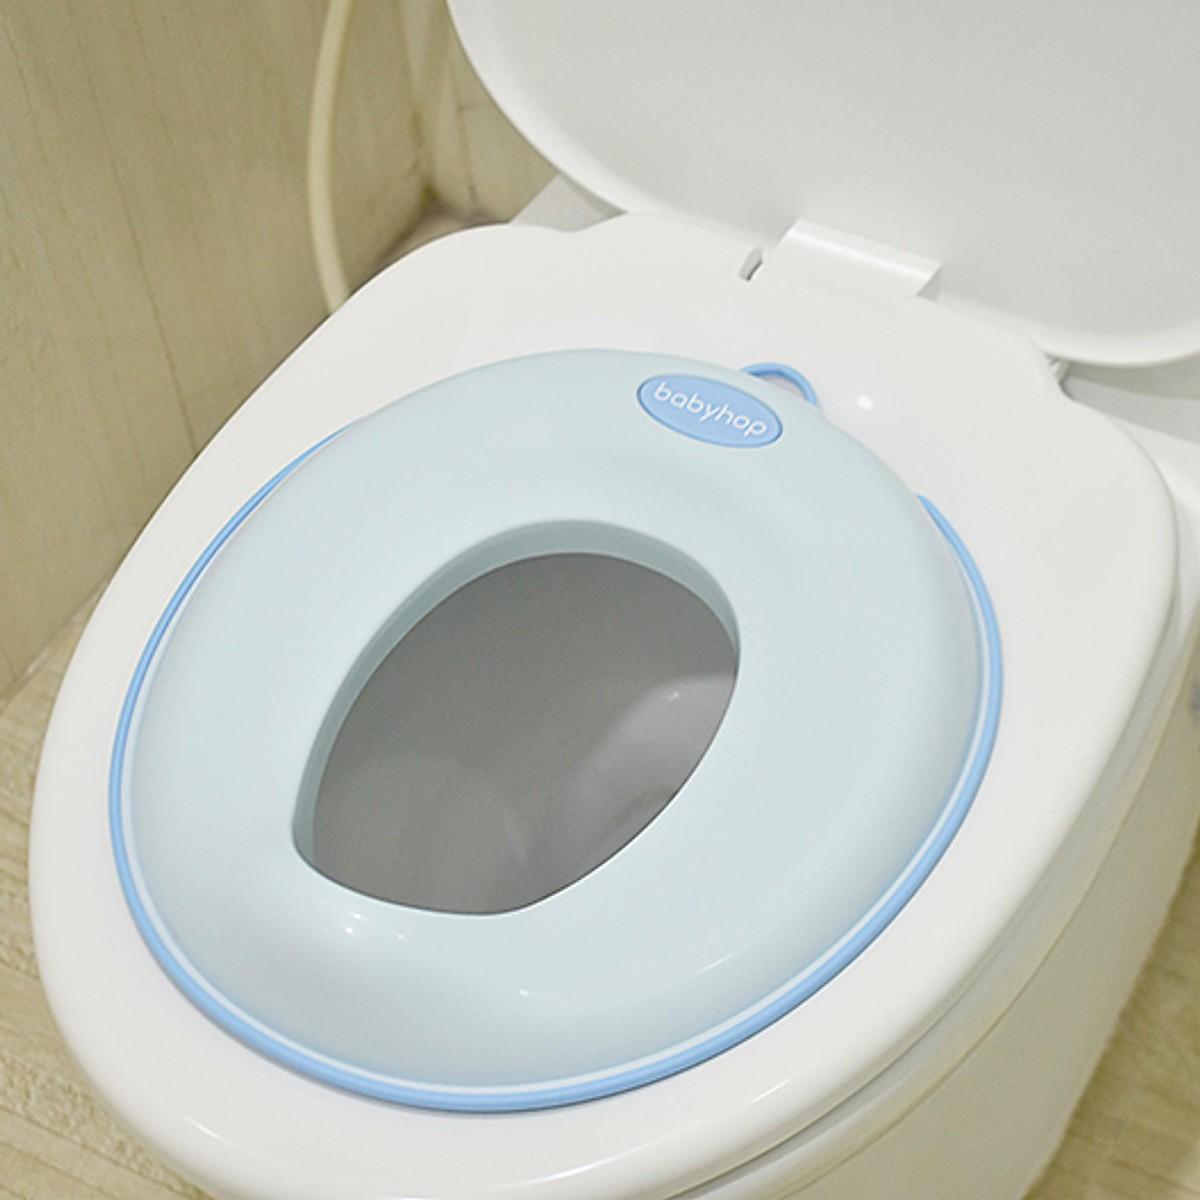 Nắp ngồi vệ sinh thu nhỏ bồn cầu giữ nhiệt, an toàn cho bé tập đi vệ sinh độc lập